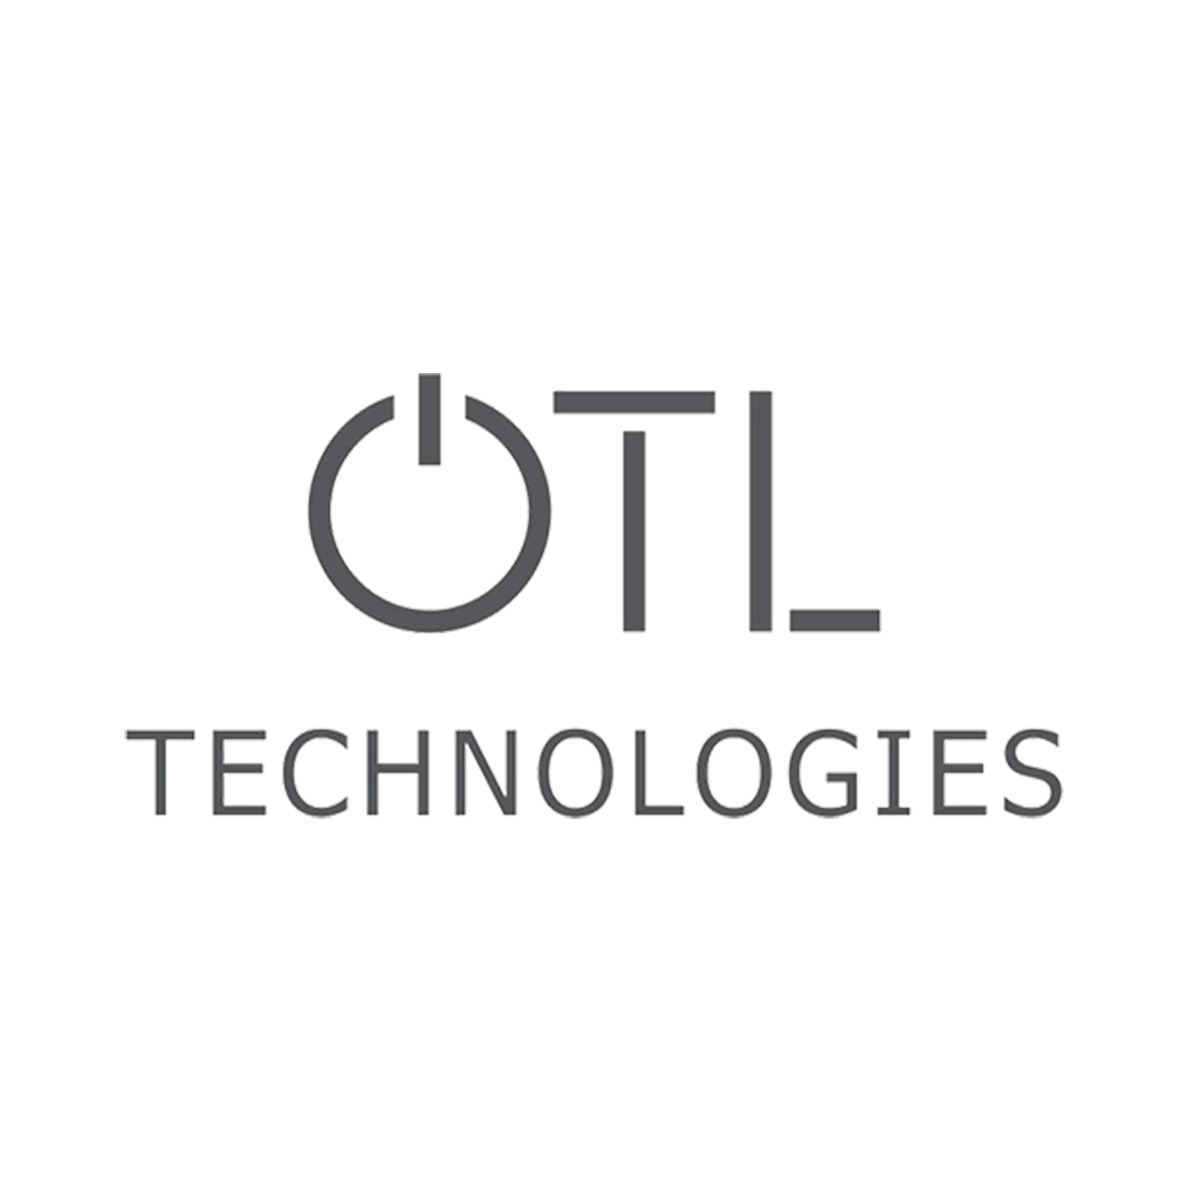 OTL technologies